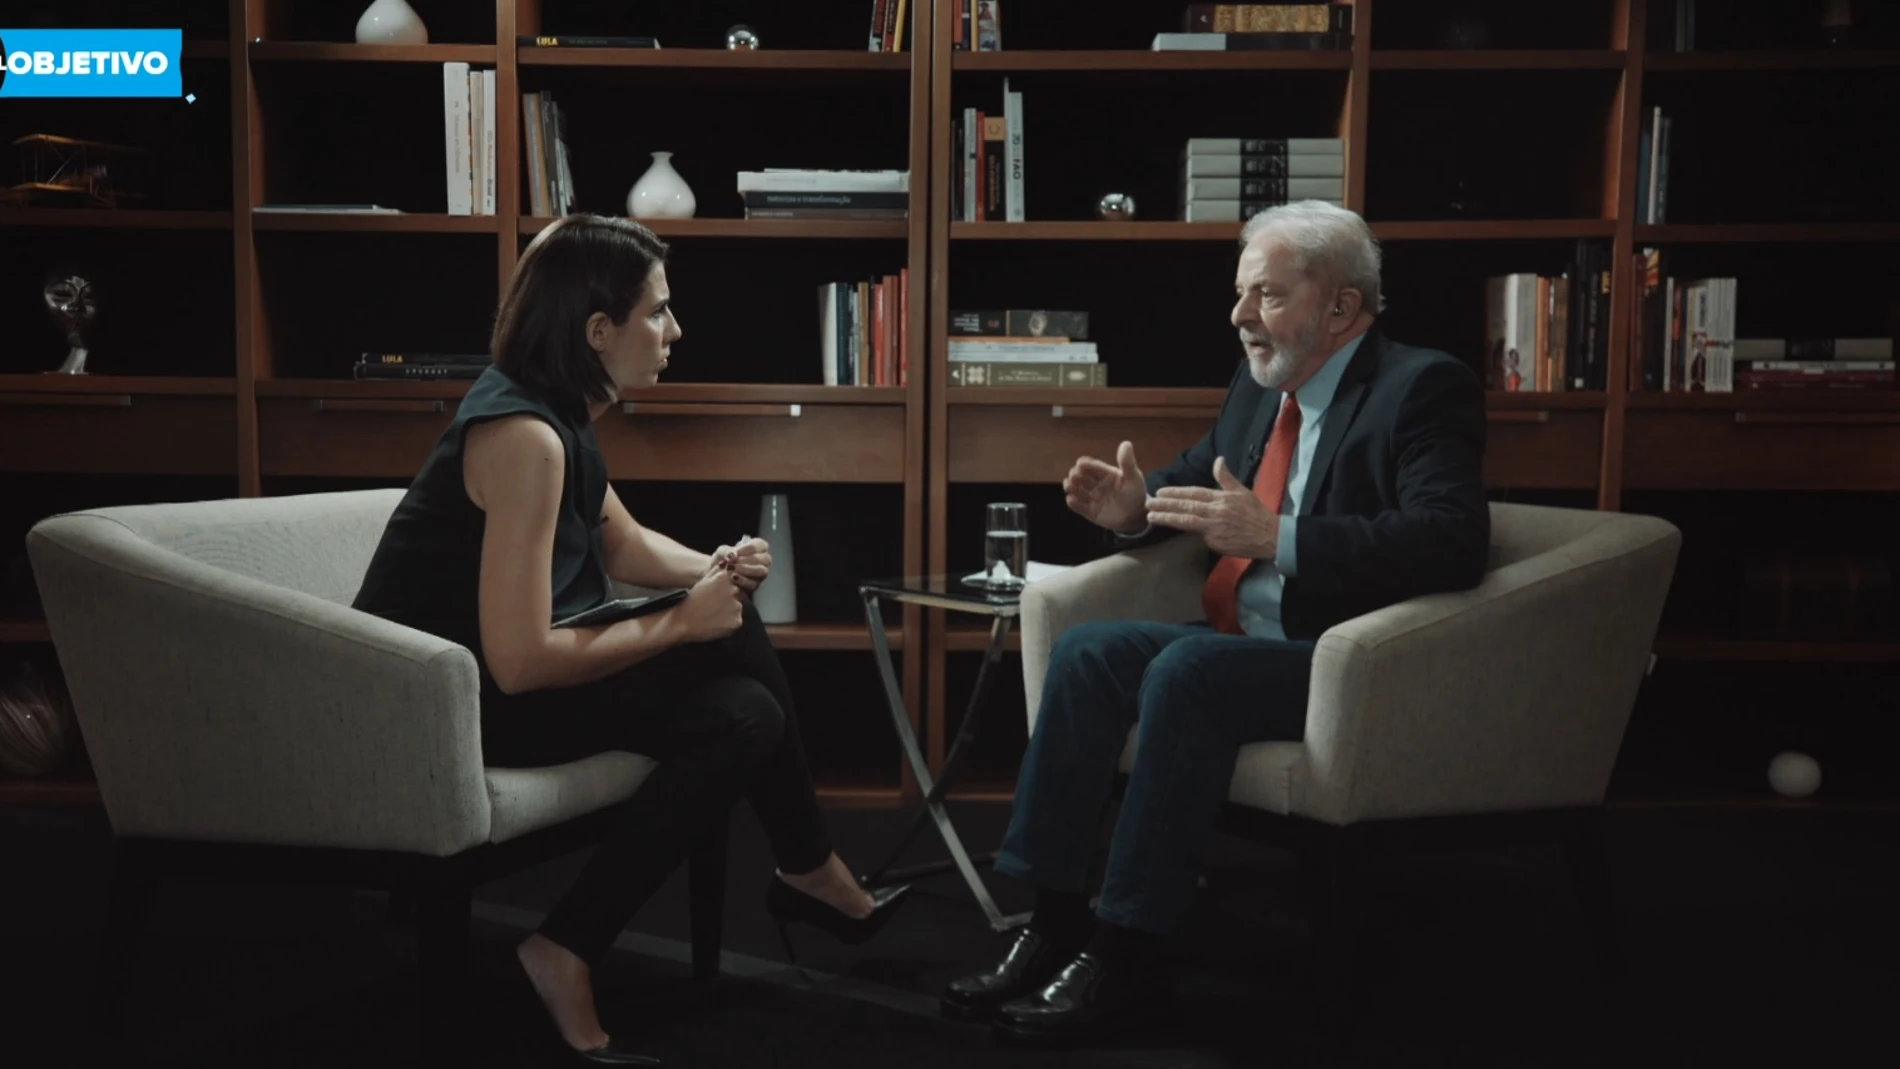 Lula da Silva y Ana Pastor en la entrevista en El Objetivo